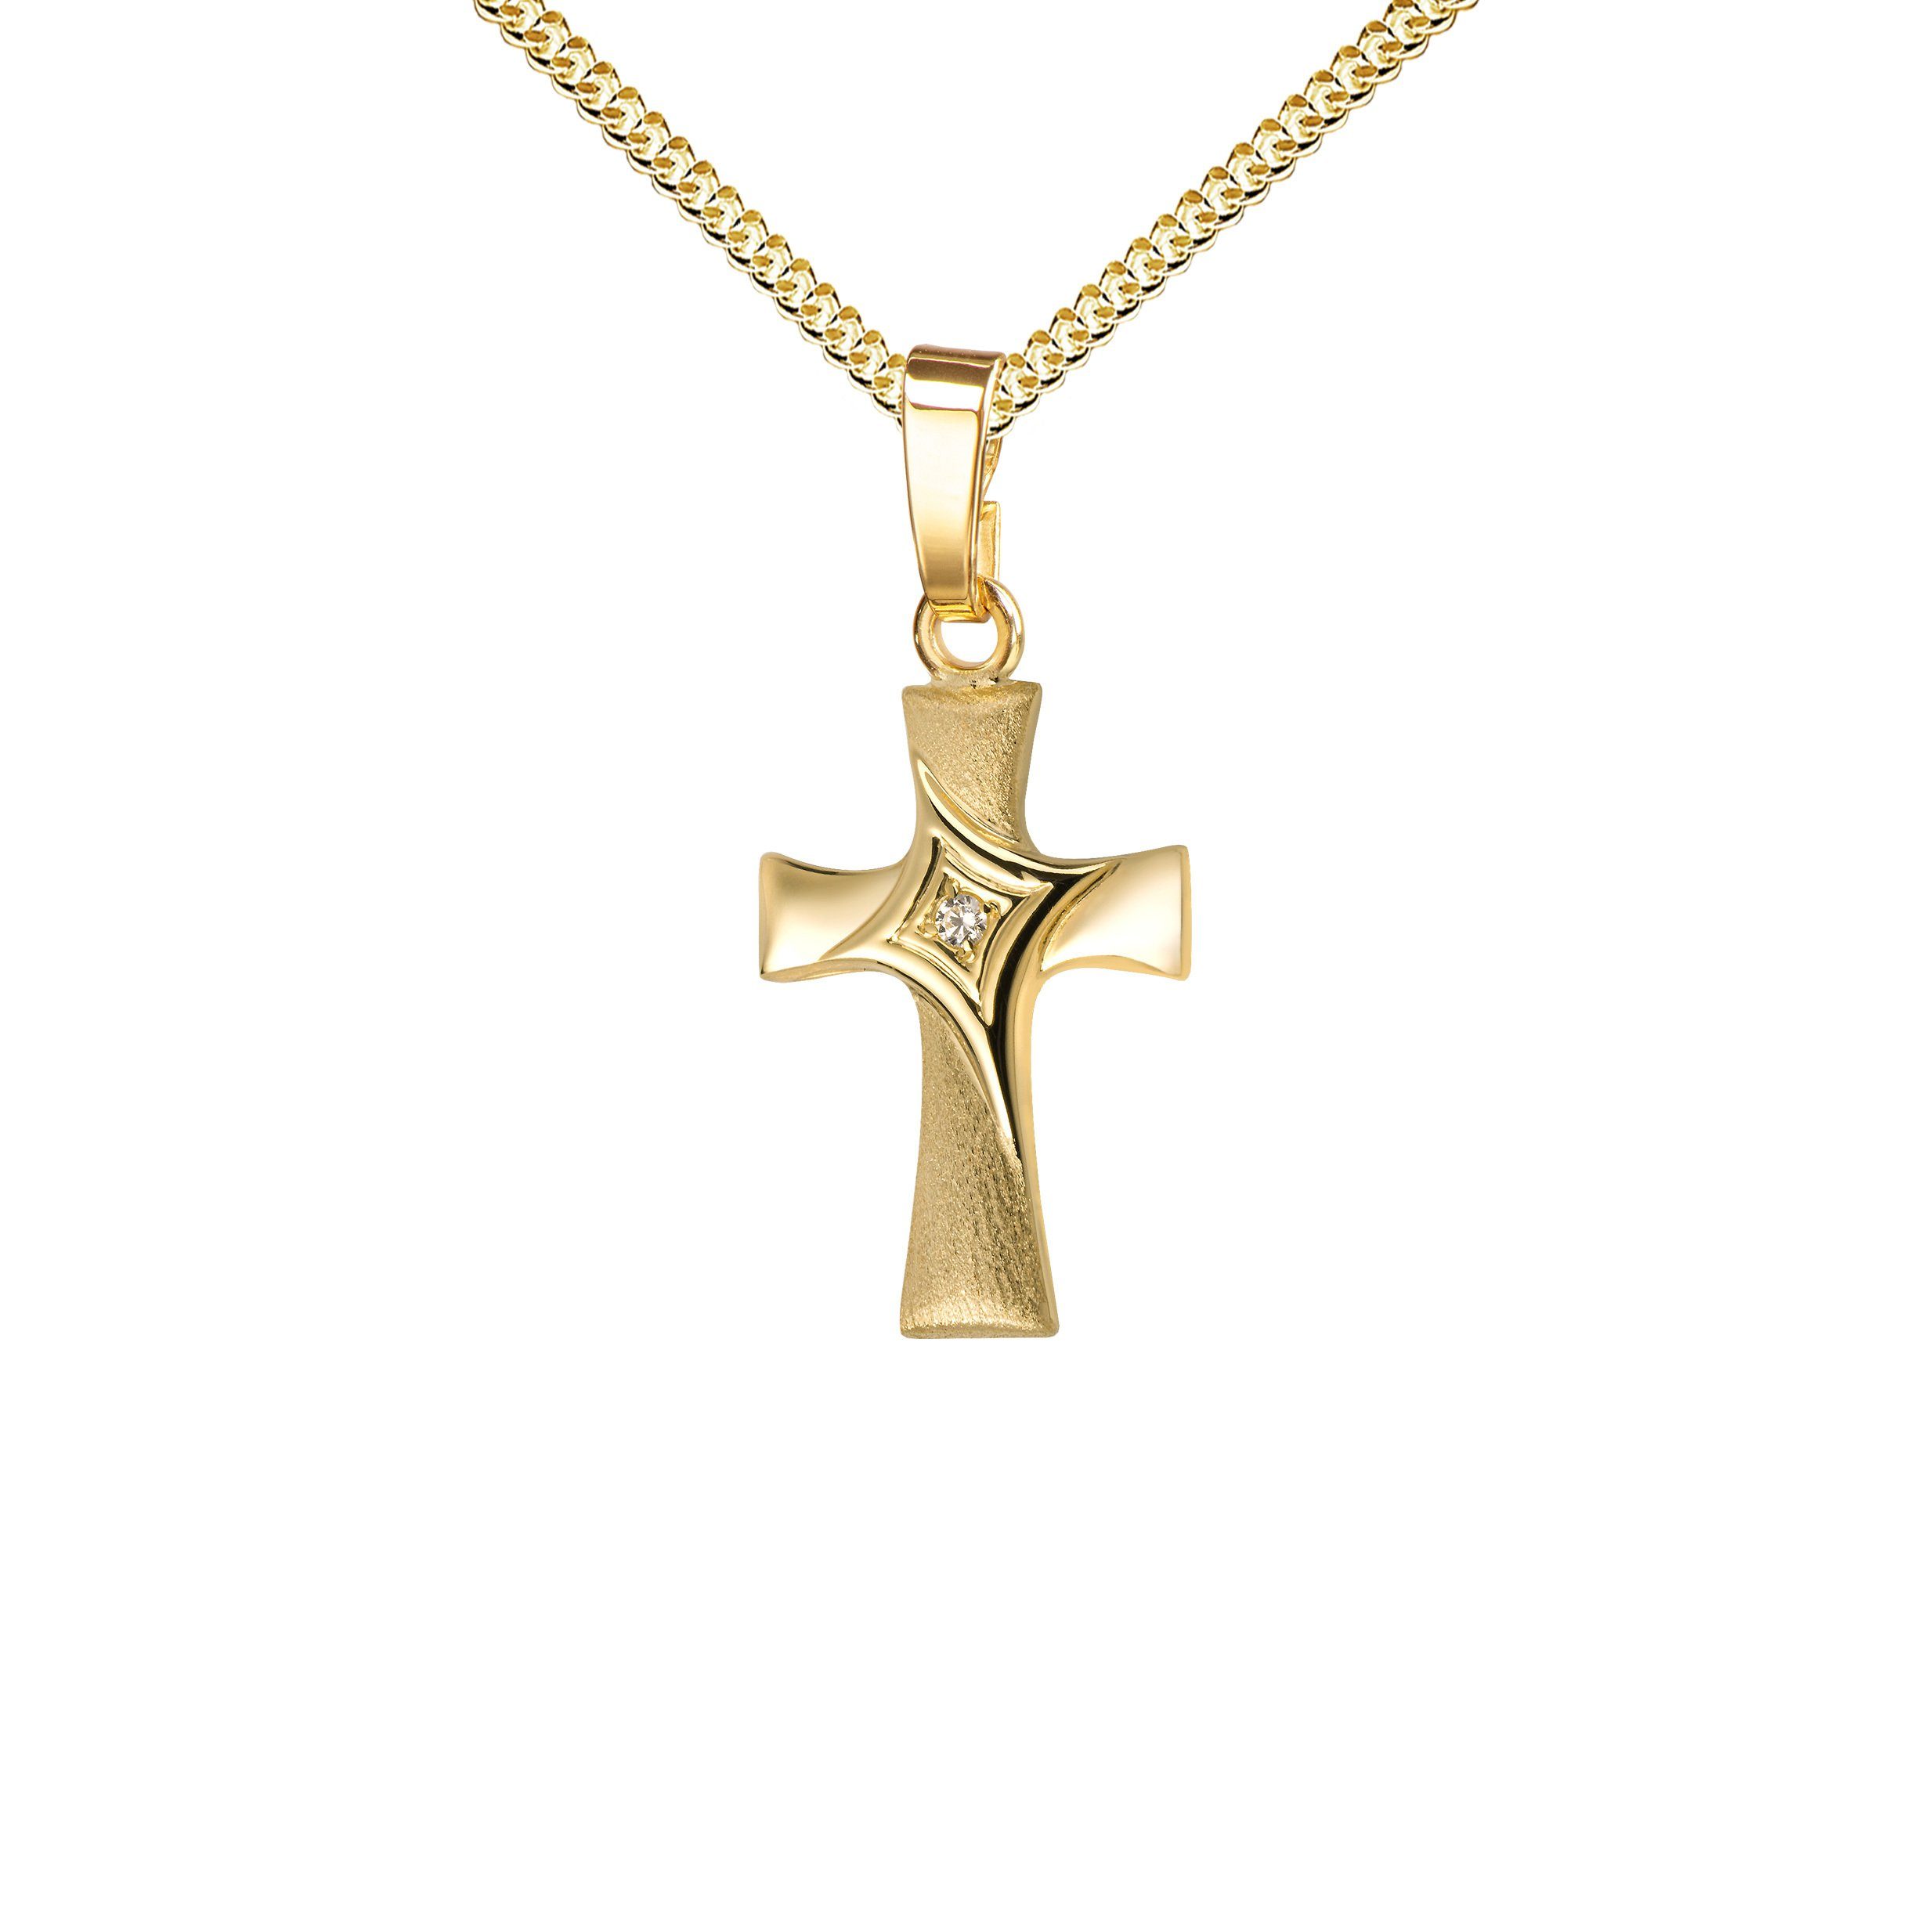 JEVELION Kreuzkette kleiner Kreuzanhänger 333 Gold mit Zirkonia - Made in Germany (Goldkreuz, für Damen und Kinder), Mit Kette vergoldet- Länge wählbar 36 - 70 cm oder ohne Kette. | Kreuzketten